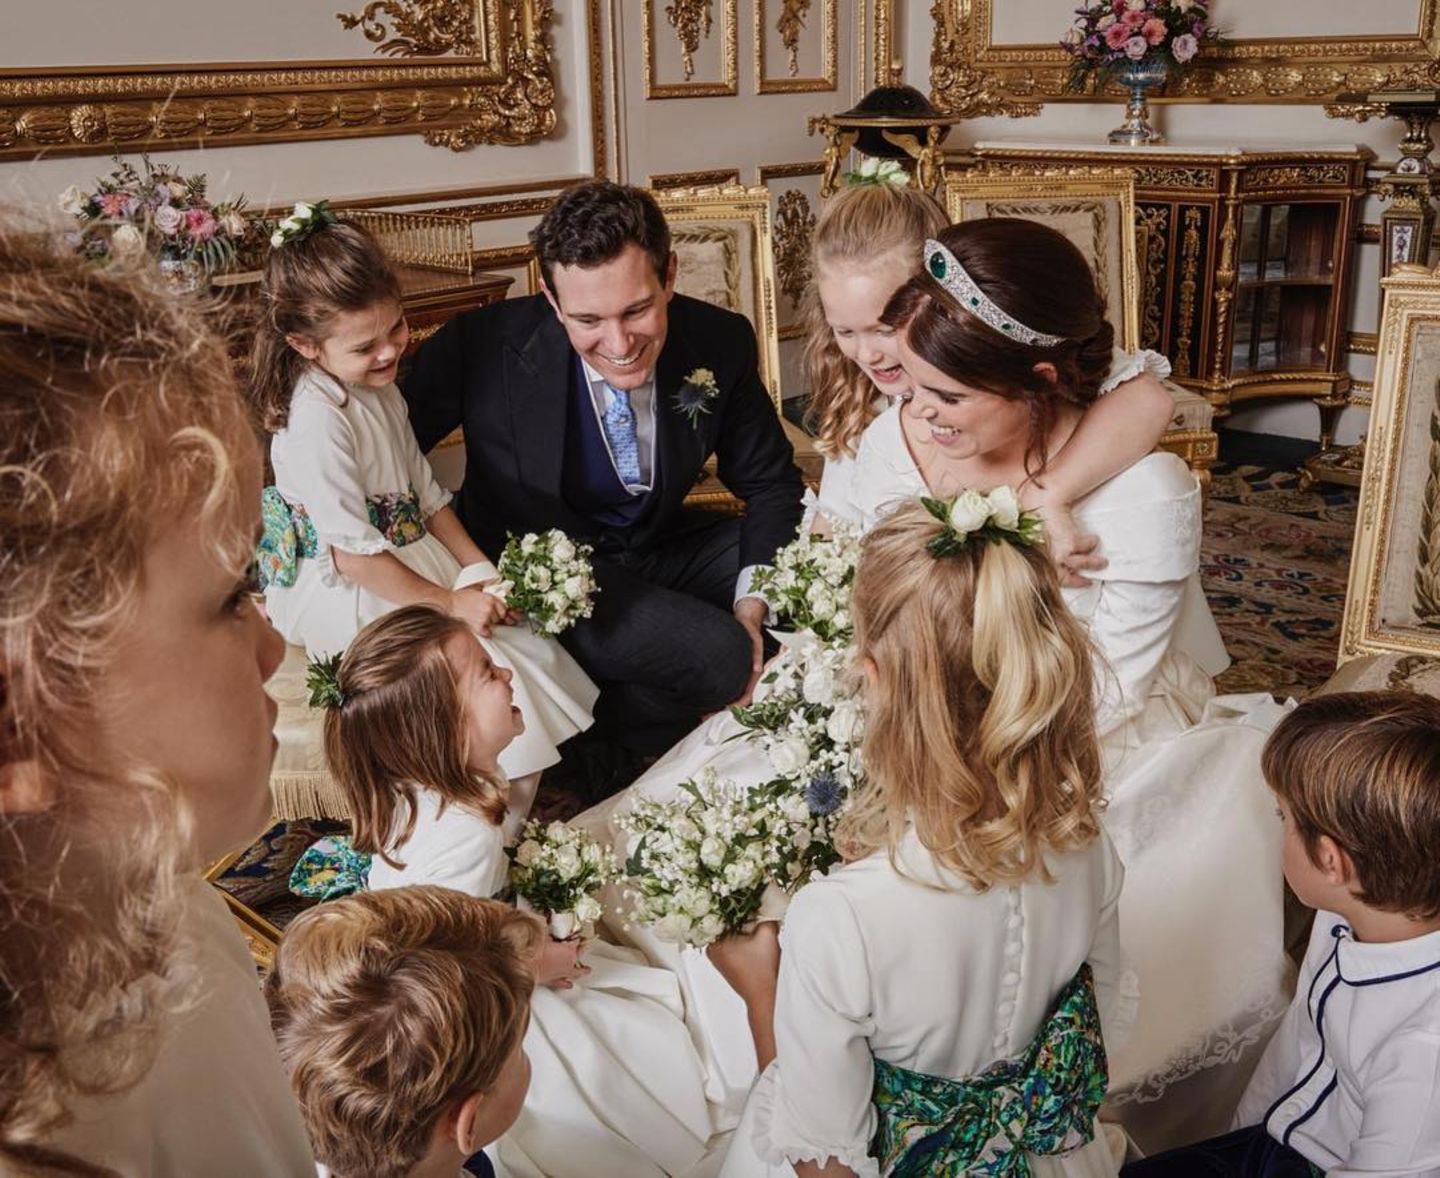 Mit diesem  zauberhaften Schnappschuss möchten sich Prinzessin Eugenie und ihr Ehemann Jack Brooksbank bei allen bedanken, die den Hochzeitstag so besonders gemacht haben. Zu sehen ist das frisch vermählte Paar mit den vielen kleinen Blumenmädchen und Pagen. 